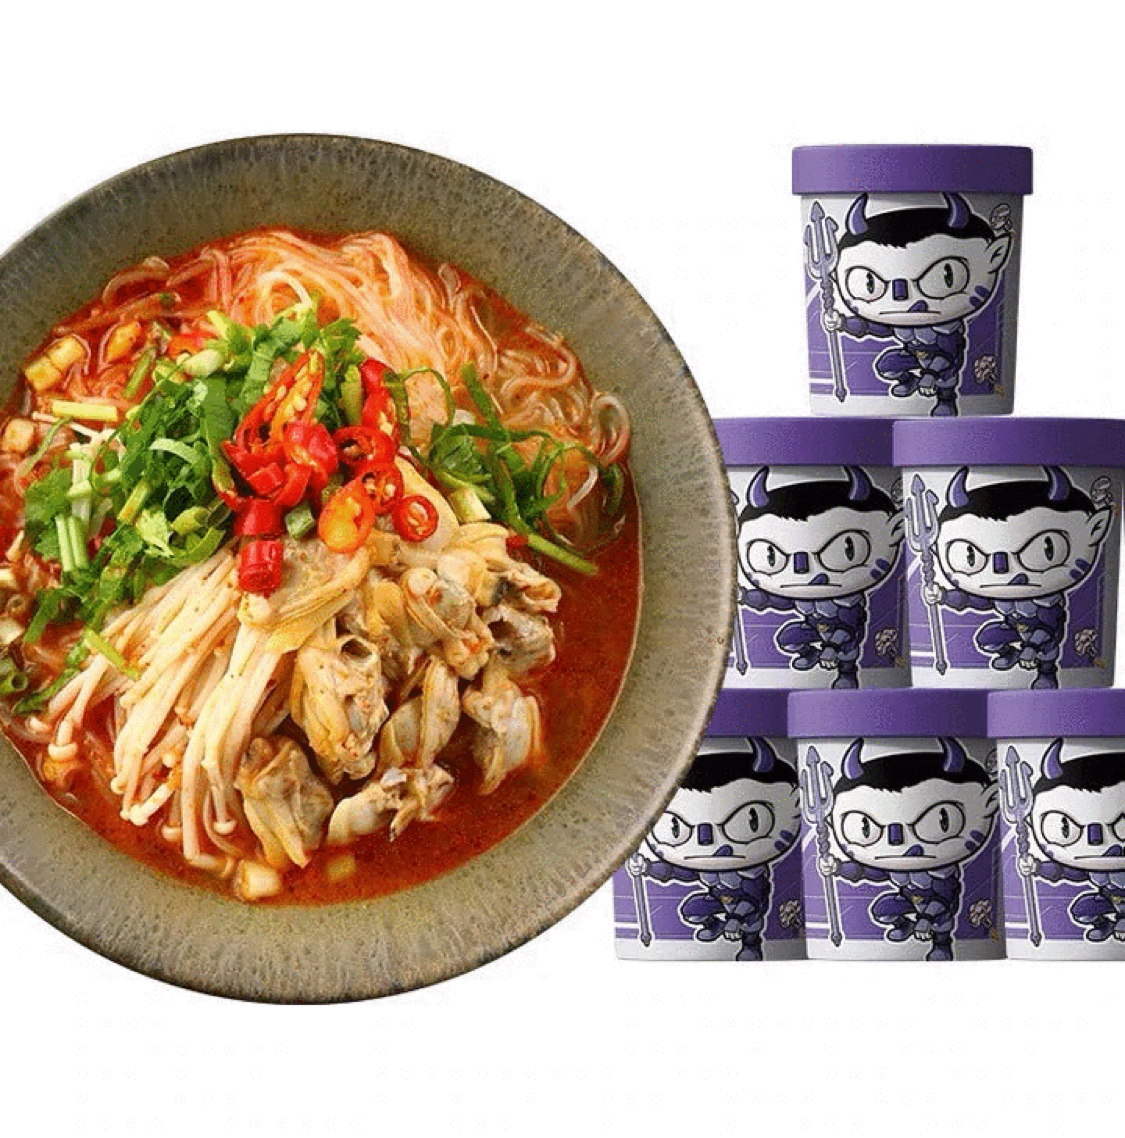 SHIZUREN Instant Cup Noodle Spicy Clam Rice Noodles Flavor